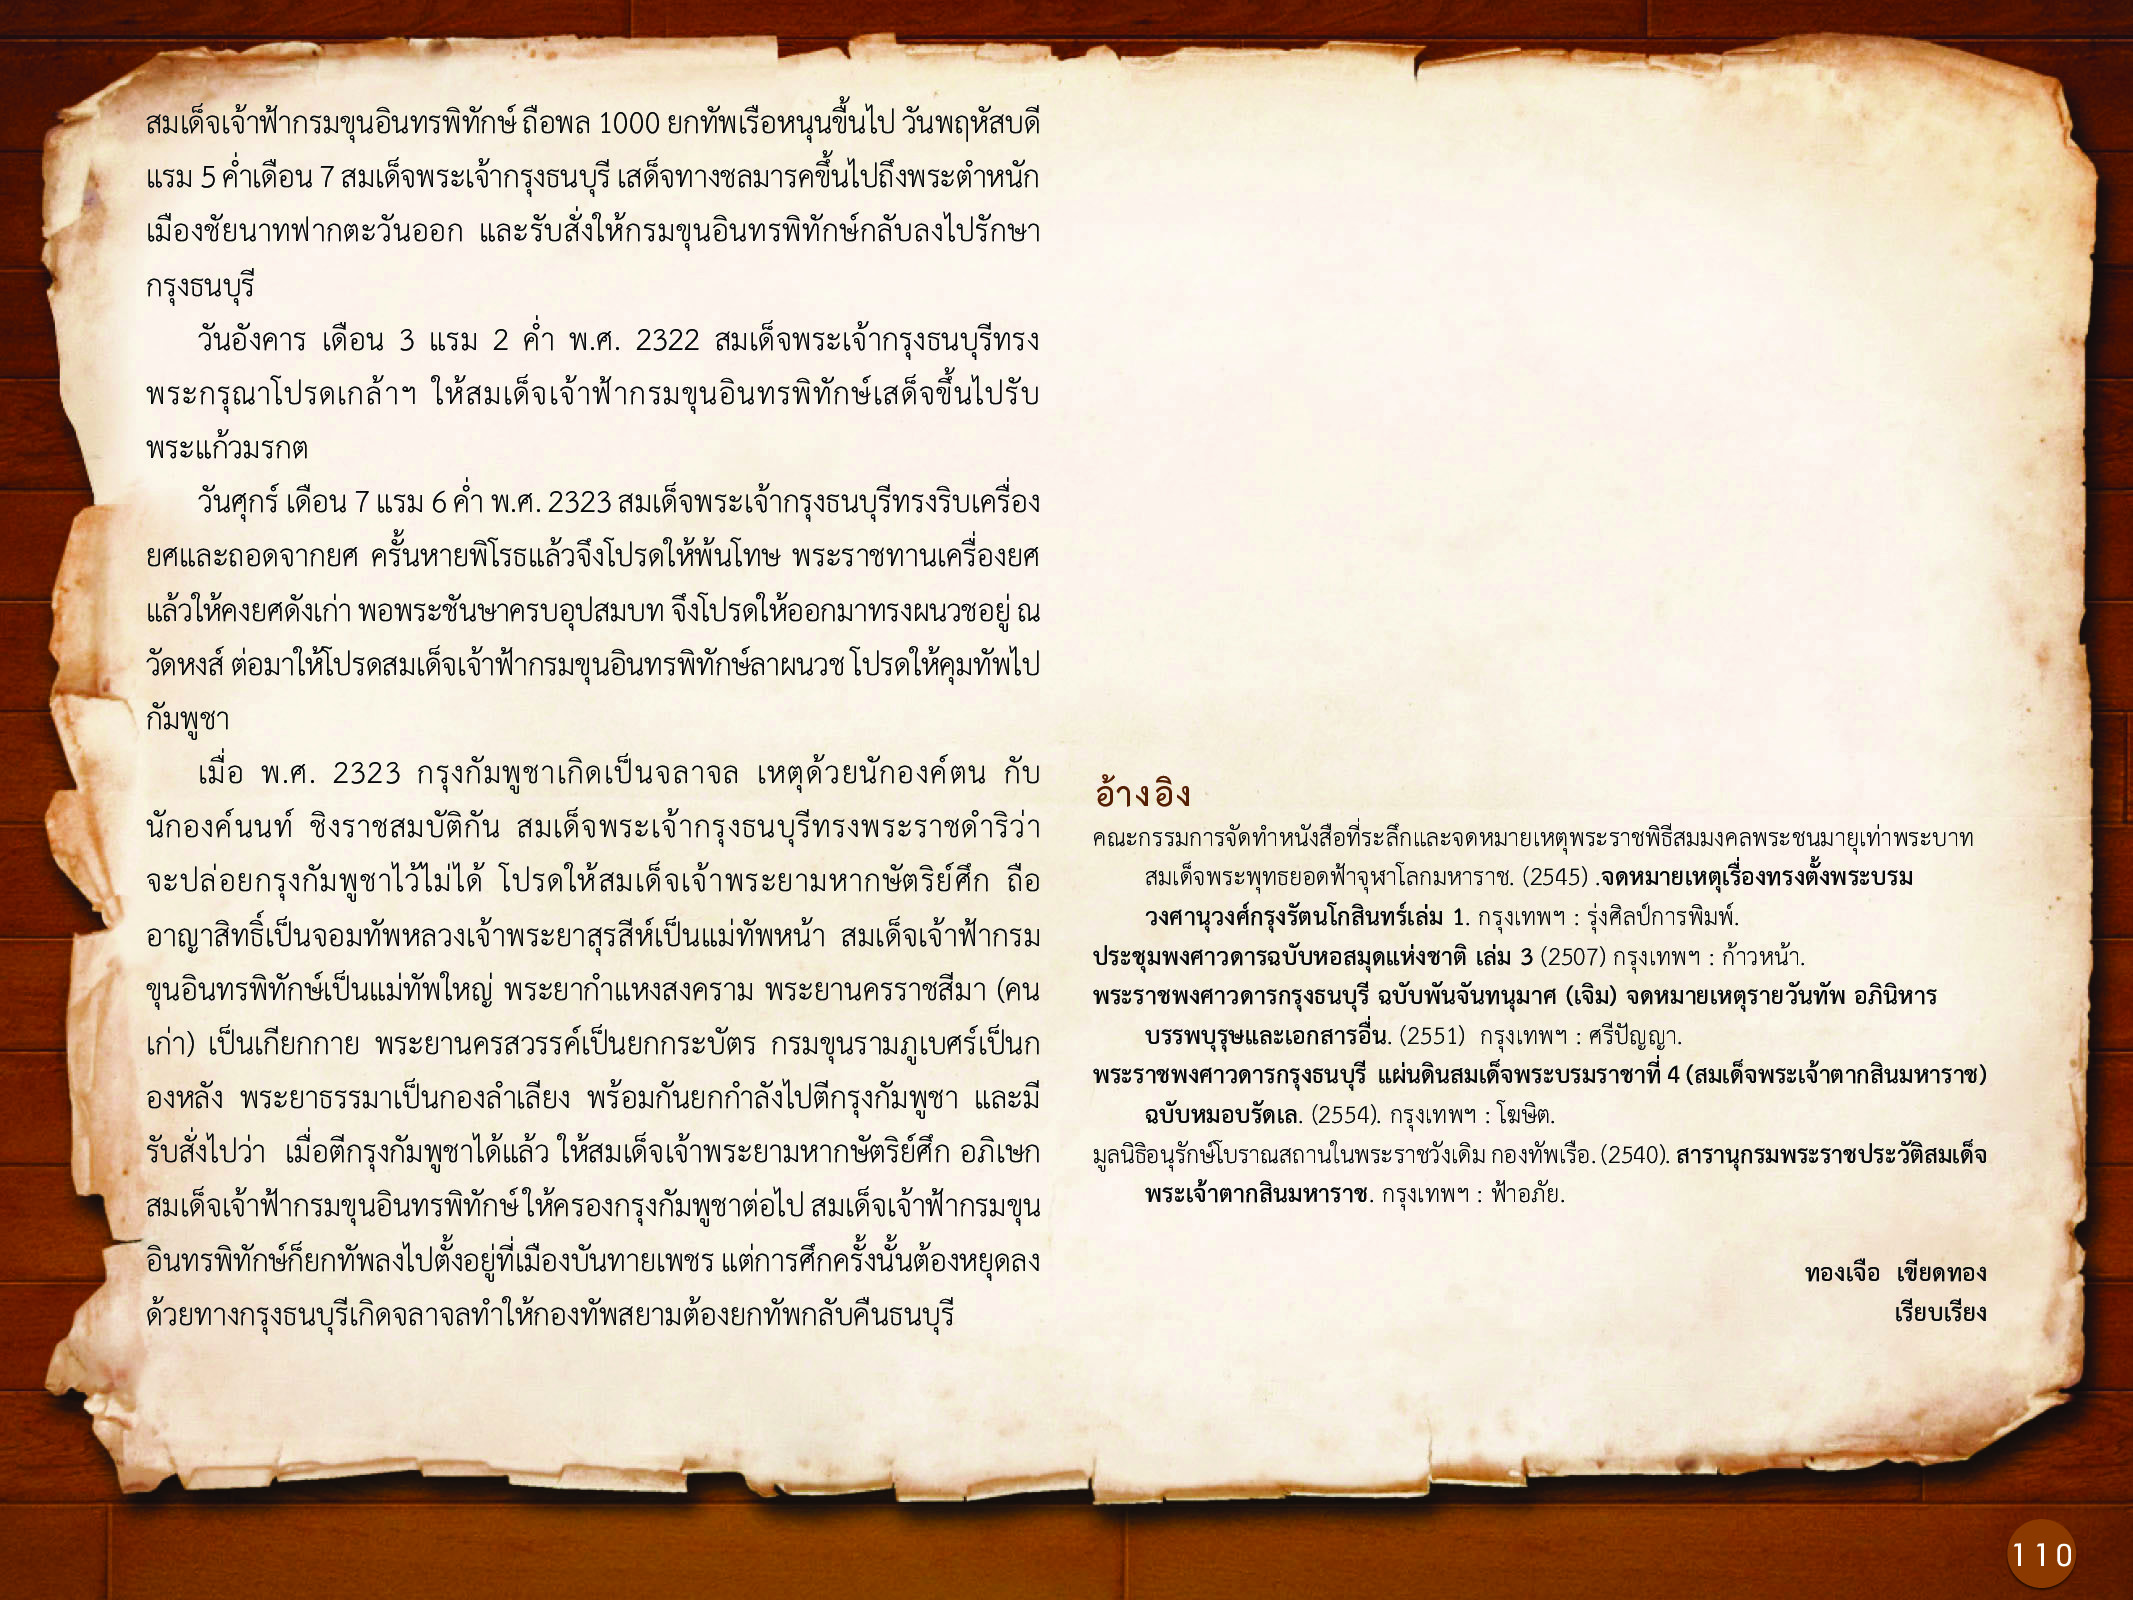 ประวัติศาสตร์กรุงธนบุรี ./images/history_dhonburi/110.jpg